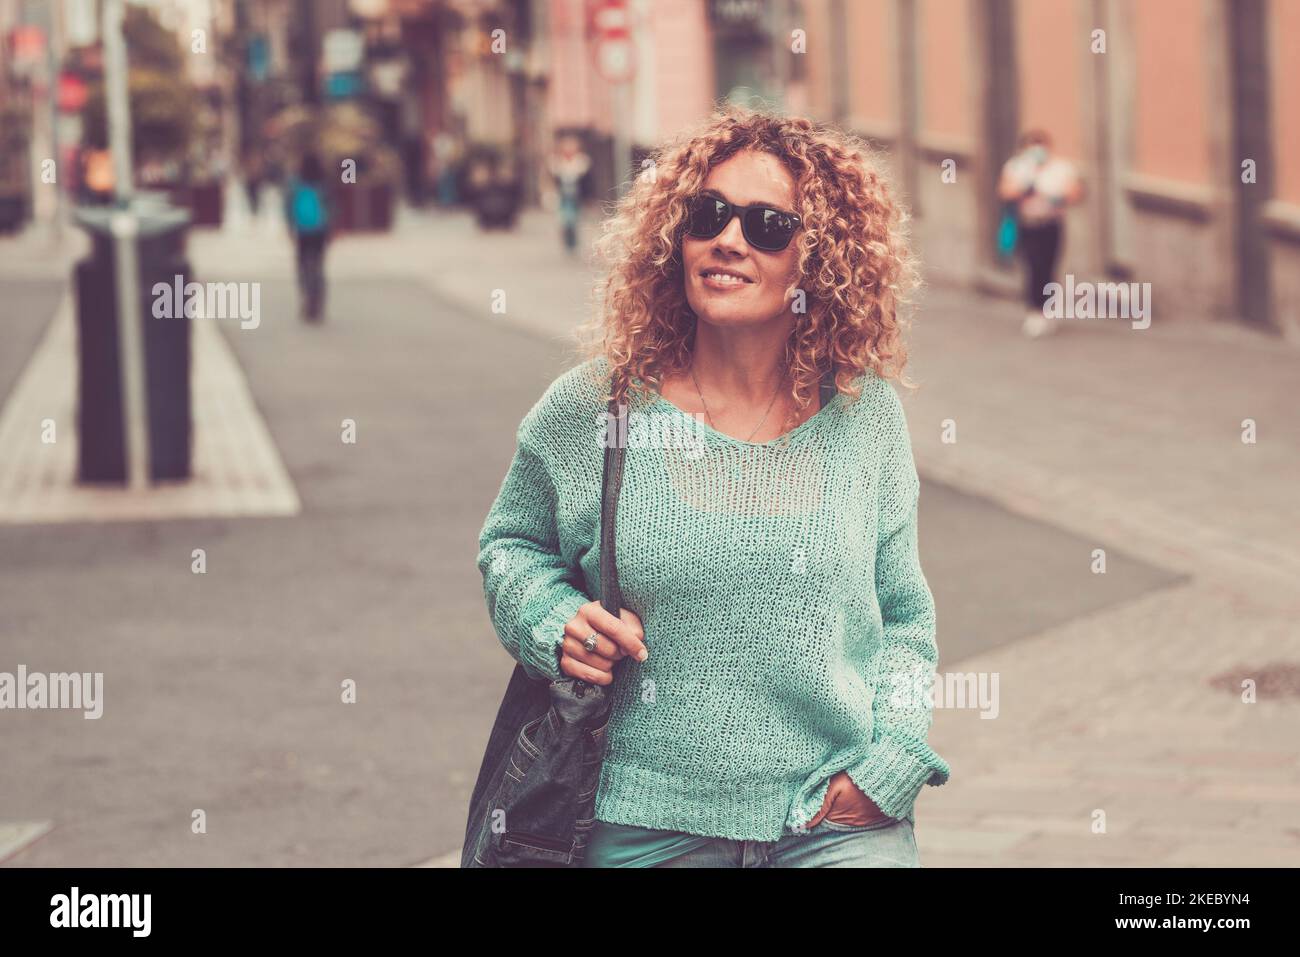 Lächelnd attraktive weibliche Touristen, die auf der Straße nach Geschäften Ausschau halten. Stadttourismus Konzept Lifestyle. Eine glückliche Frau, die im Stadtzentrum Outdoor-Aktivitäten in Sonnenbrillen genießt Stockfoto